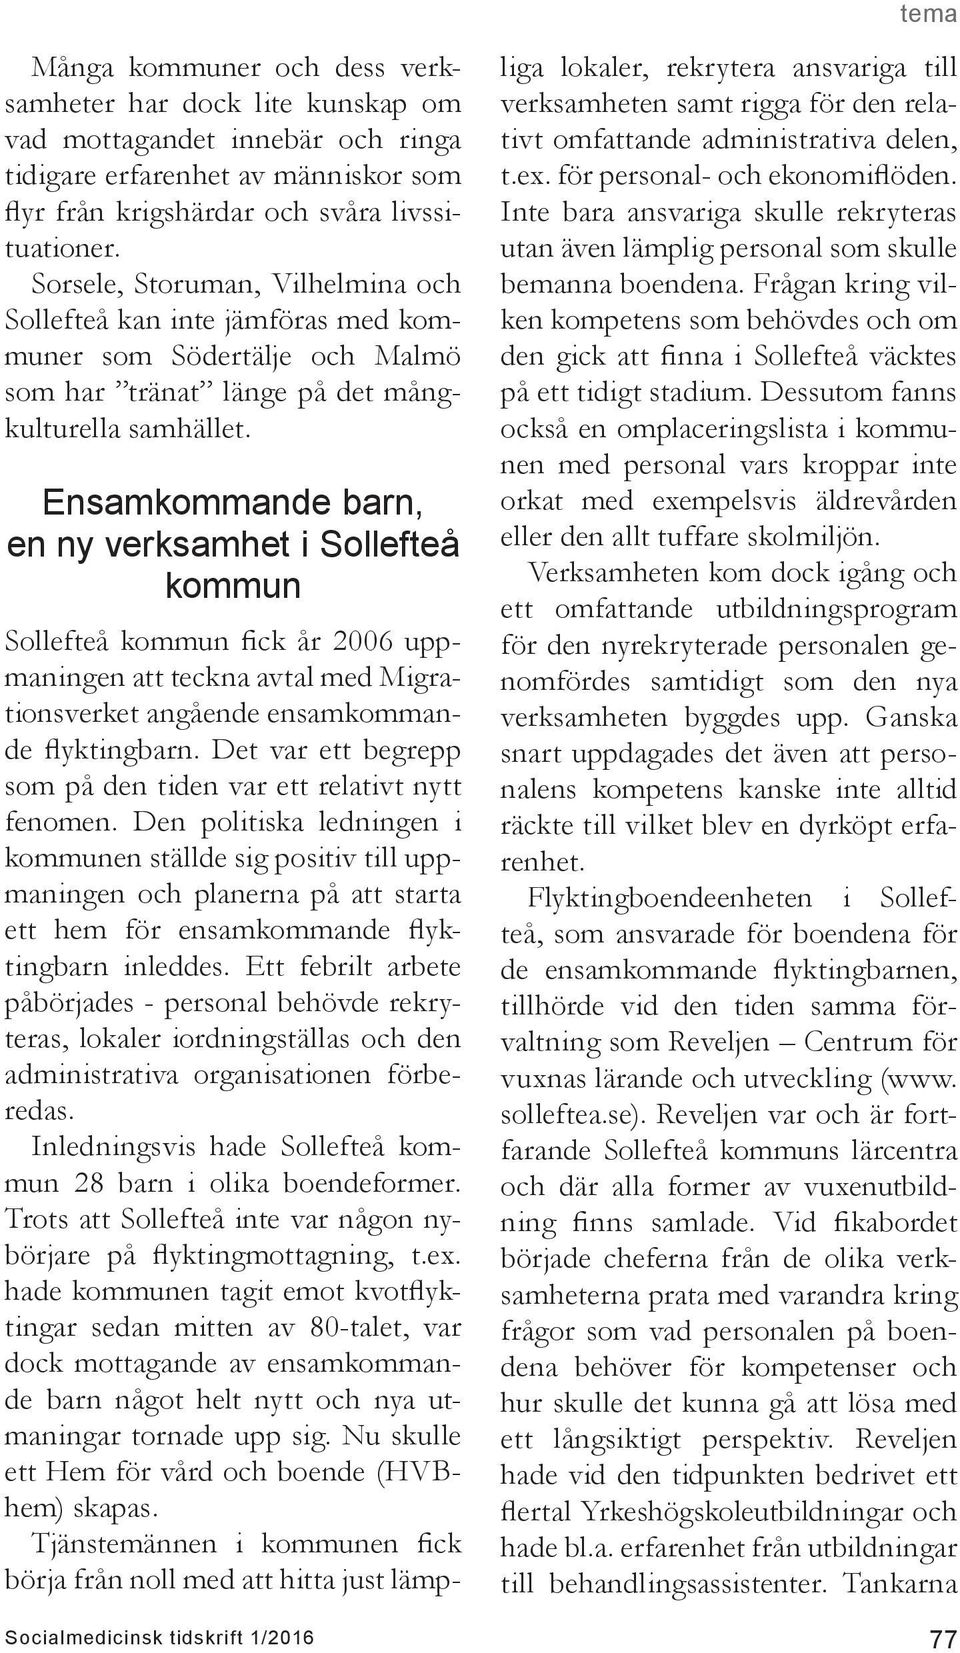 Ensamkommande barn, en ny verksamhet i Sollefteå kommun Sollefteå kommun fick år 2006 uppmaningen att teckna avtal med Migrationsverket angående ensamkommande flyktingbarn.